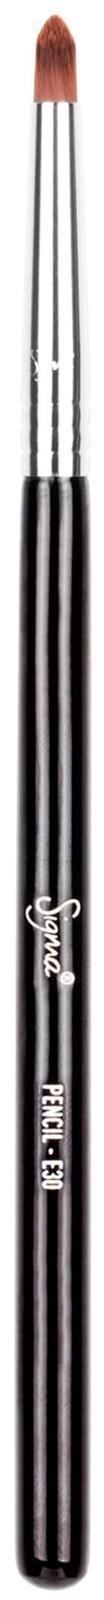 Sigma Beauty Pencil - E30s